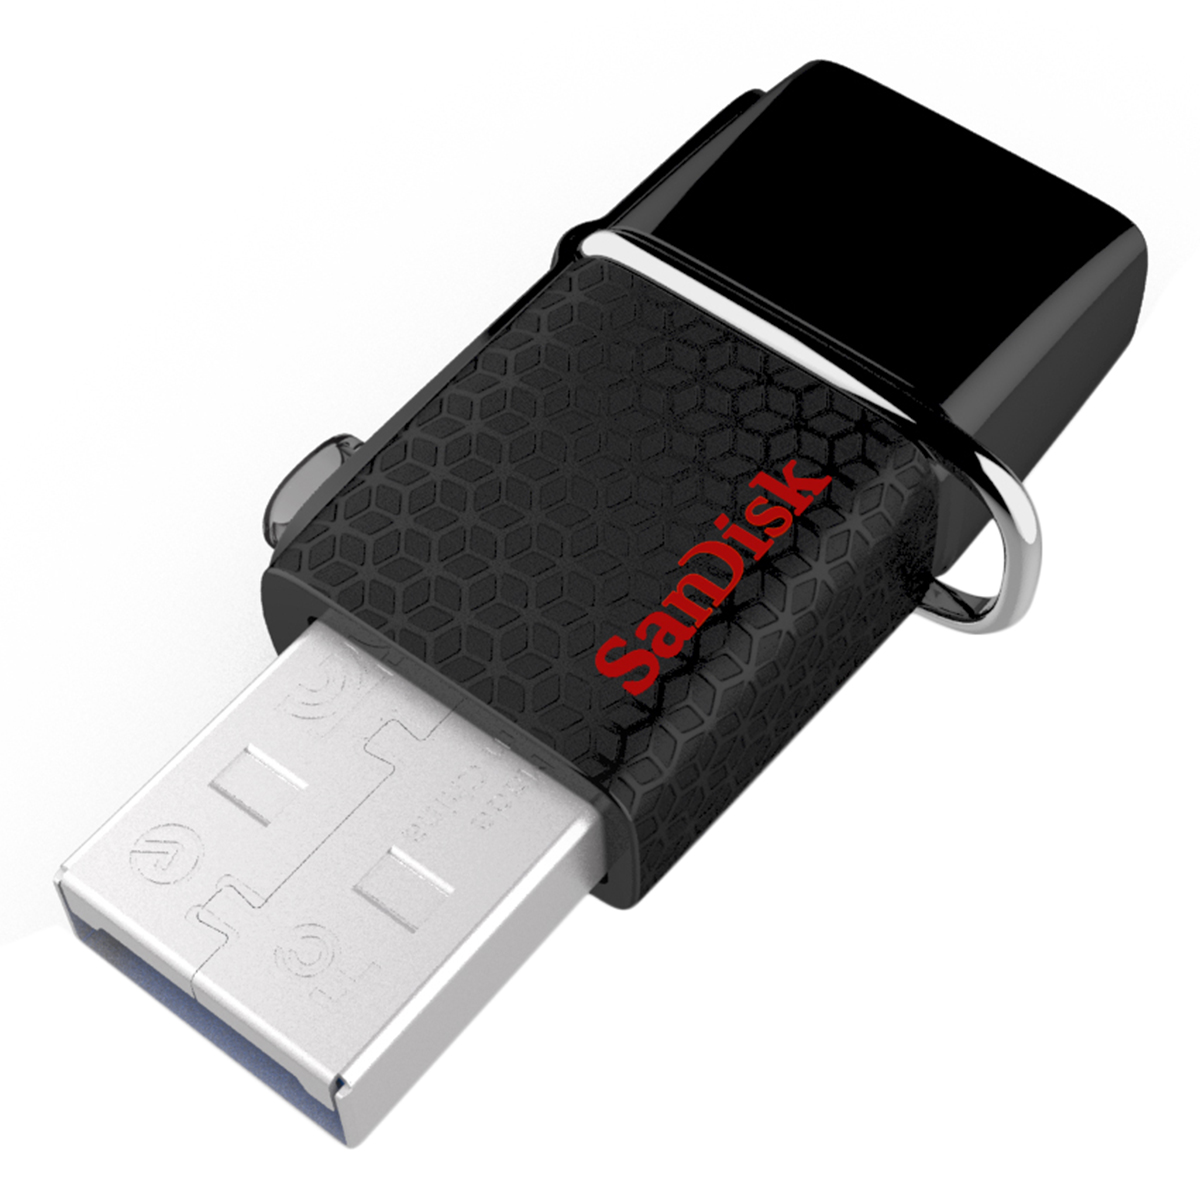 USB OTG 3.0 SanDisk Ultra 64GB (SDDD2-064G-G46) - Hàng nhập khẩu